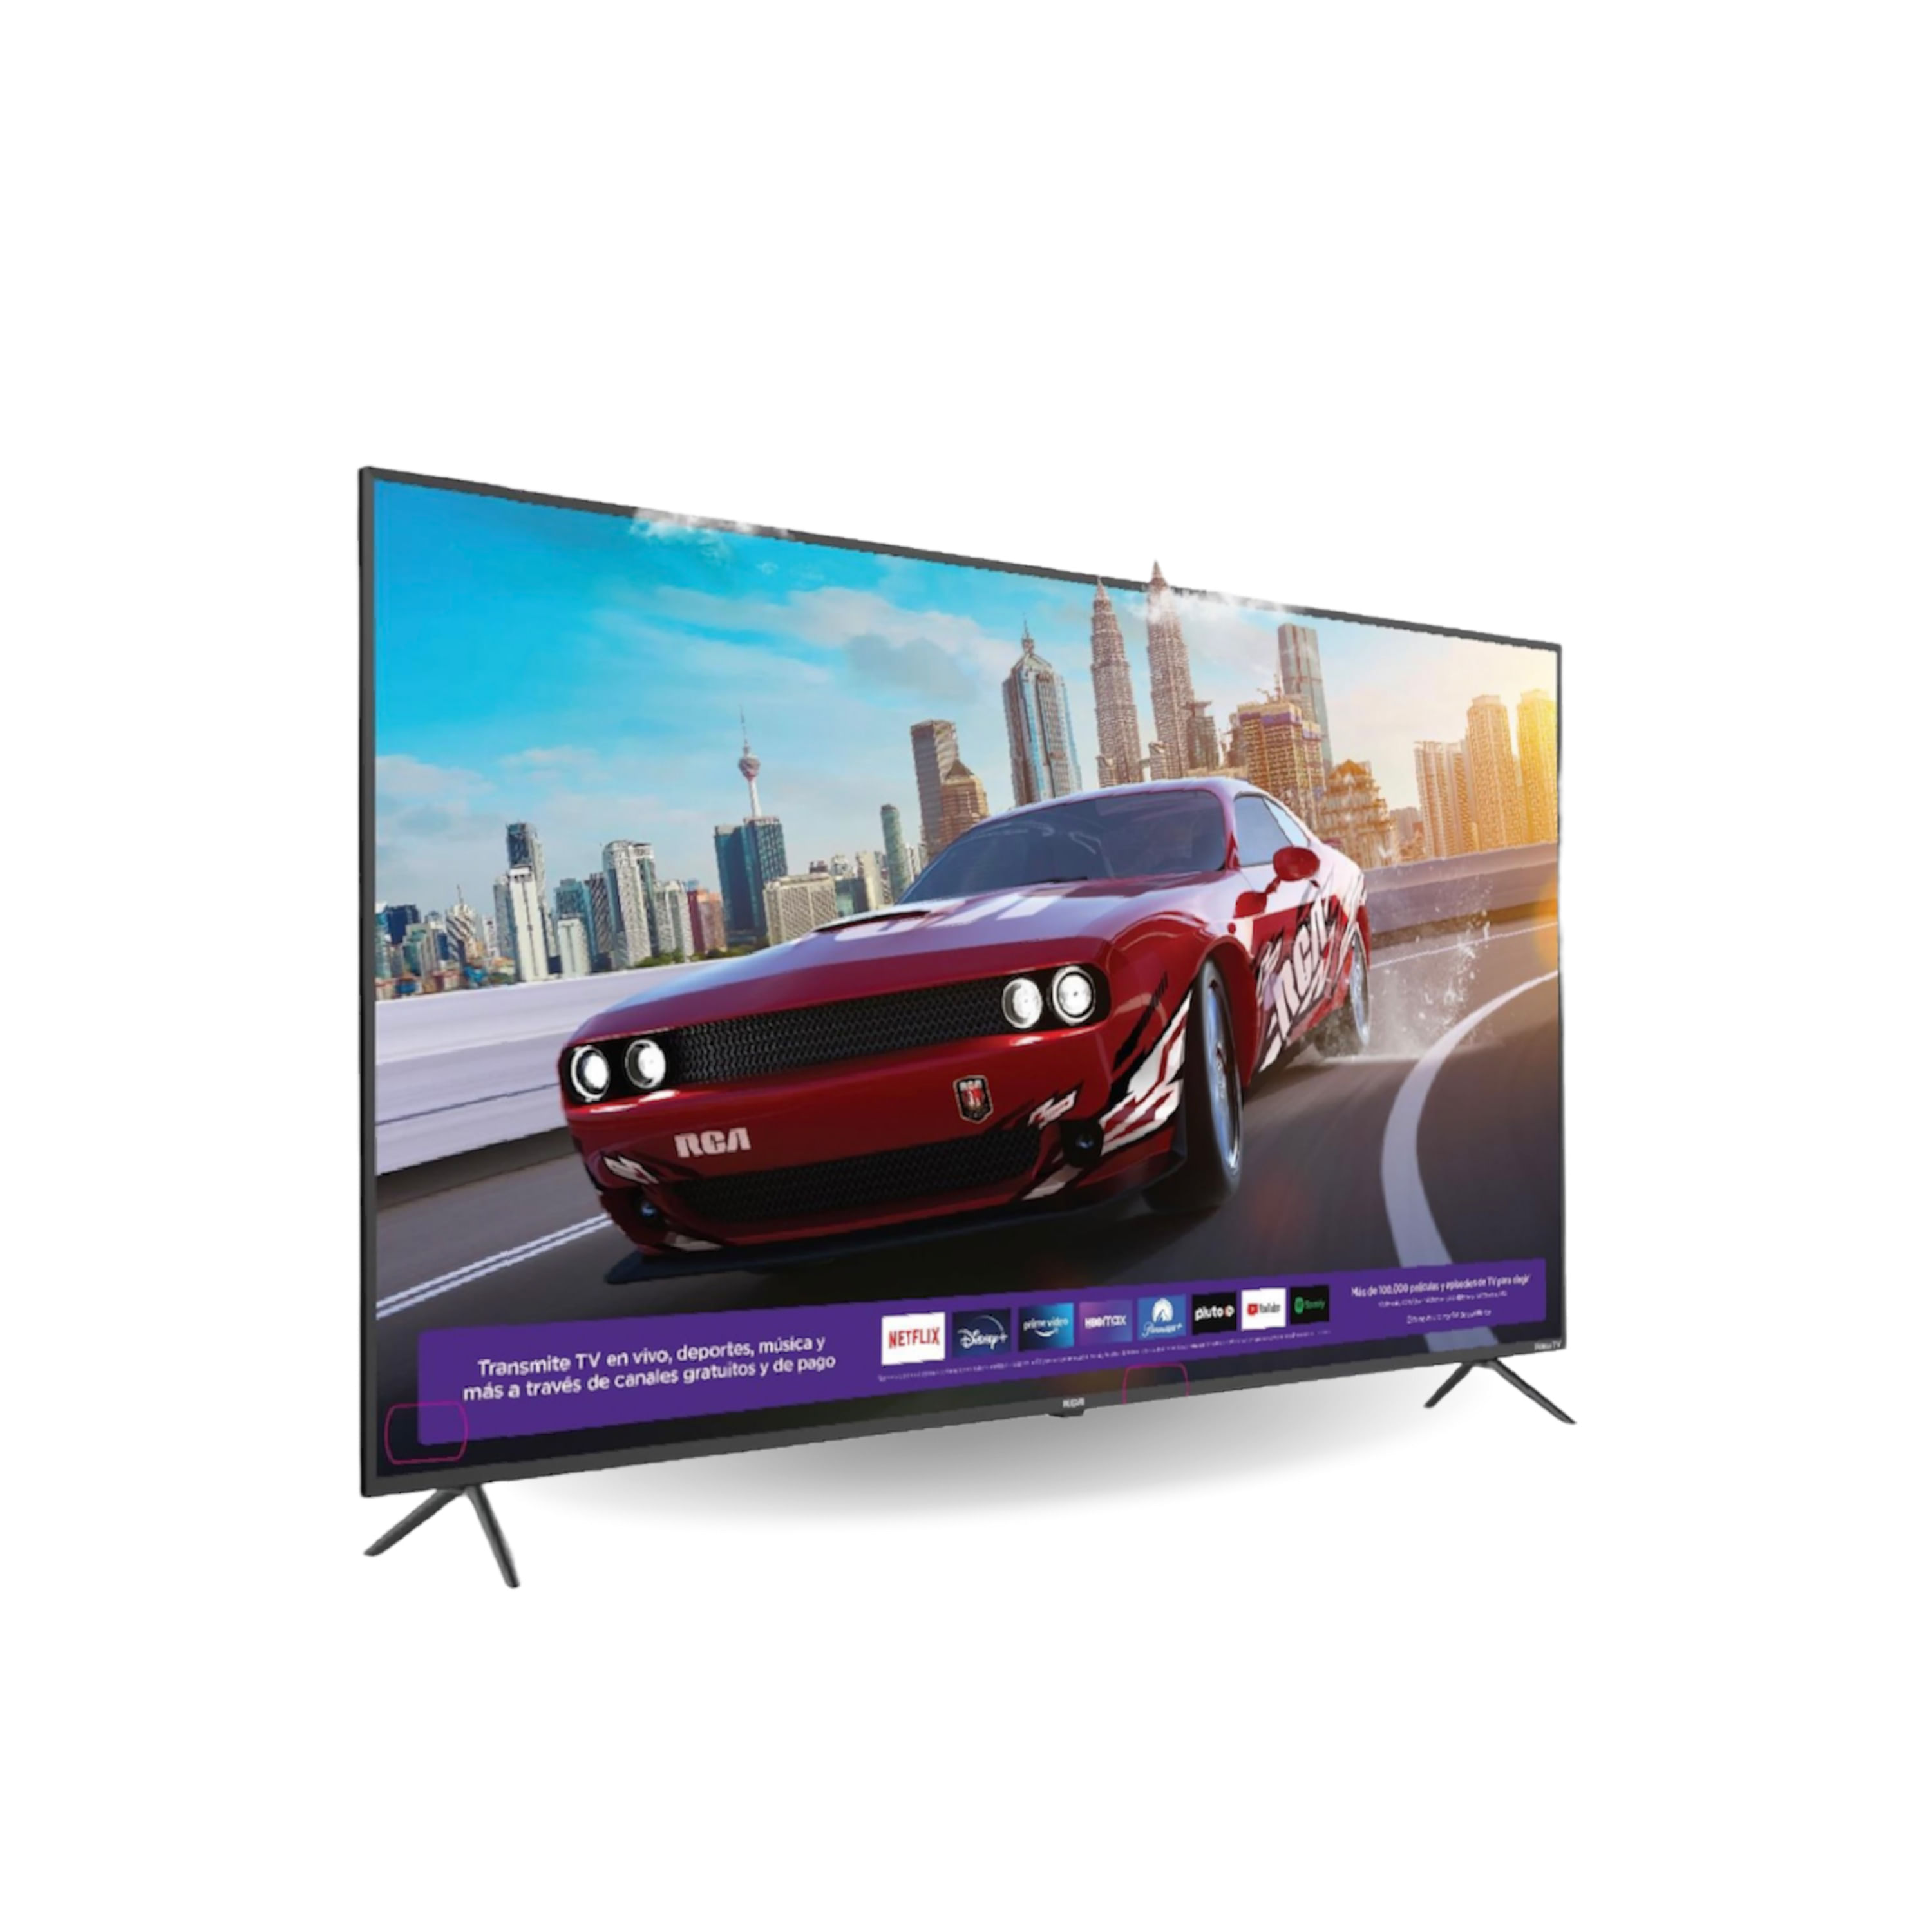 Comprar Pantalla Smart TV Durabrand, Android Led De 40 Pulgadas,  Modelo:DURA40MG, Walmart Guatemala - Maxi Despensa